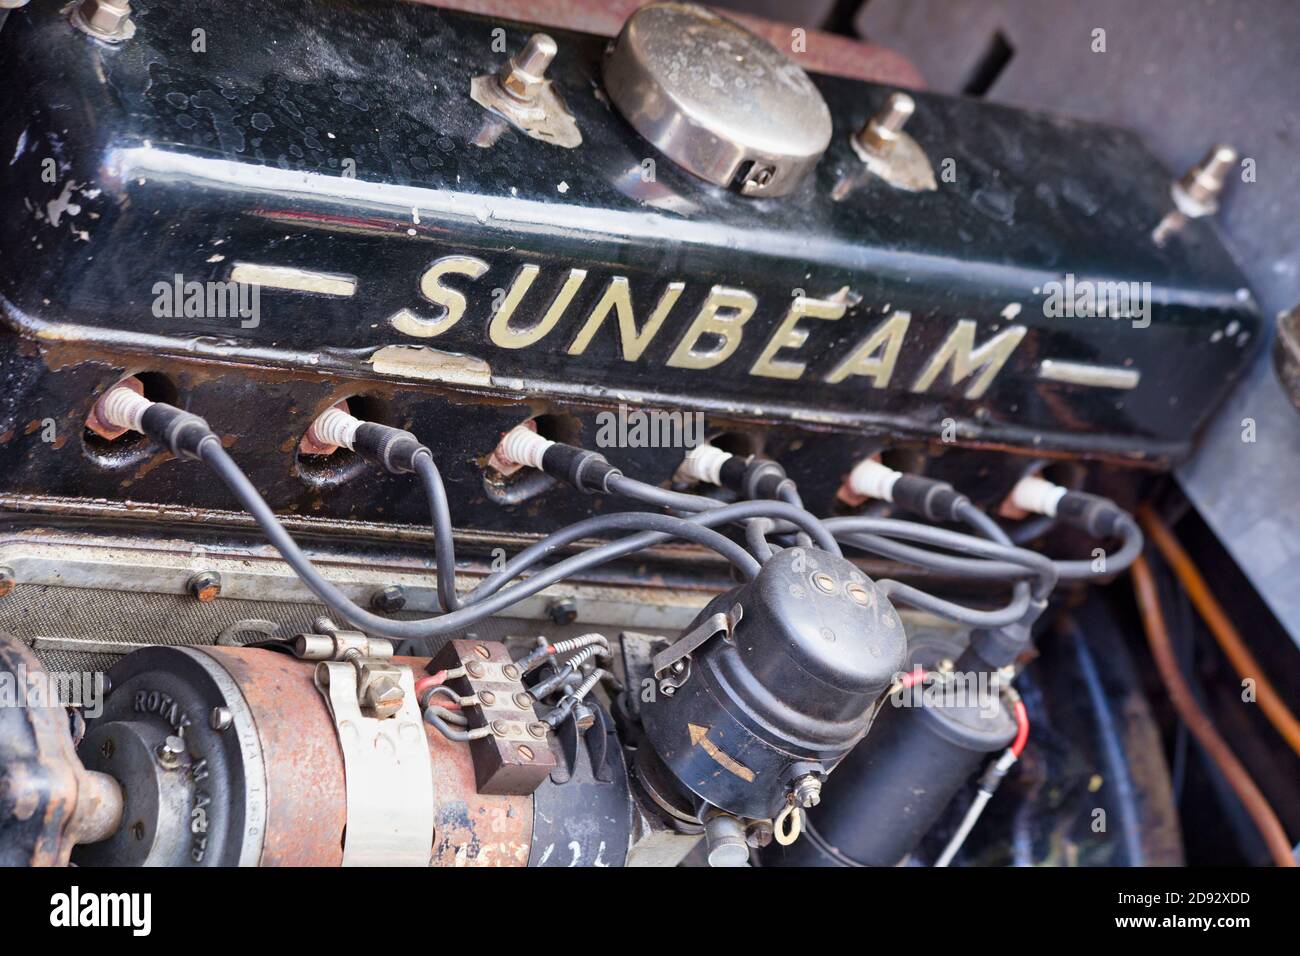 Sunbeam six cylinder engine Stock Photo